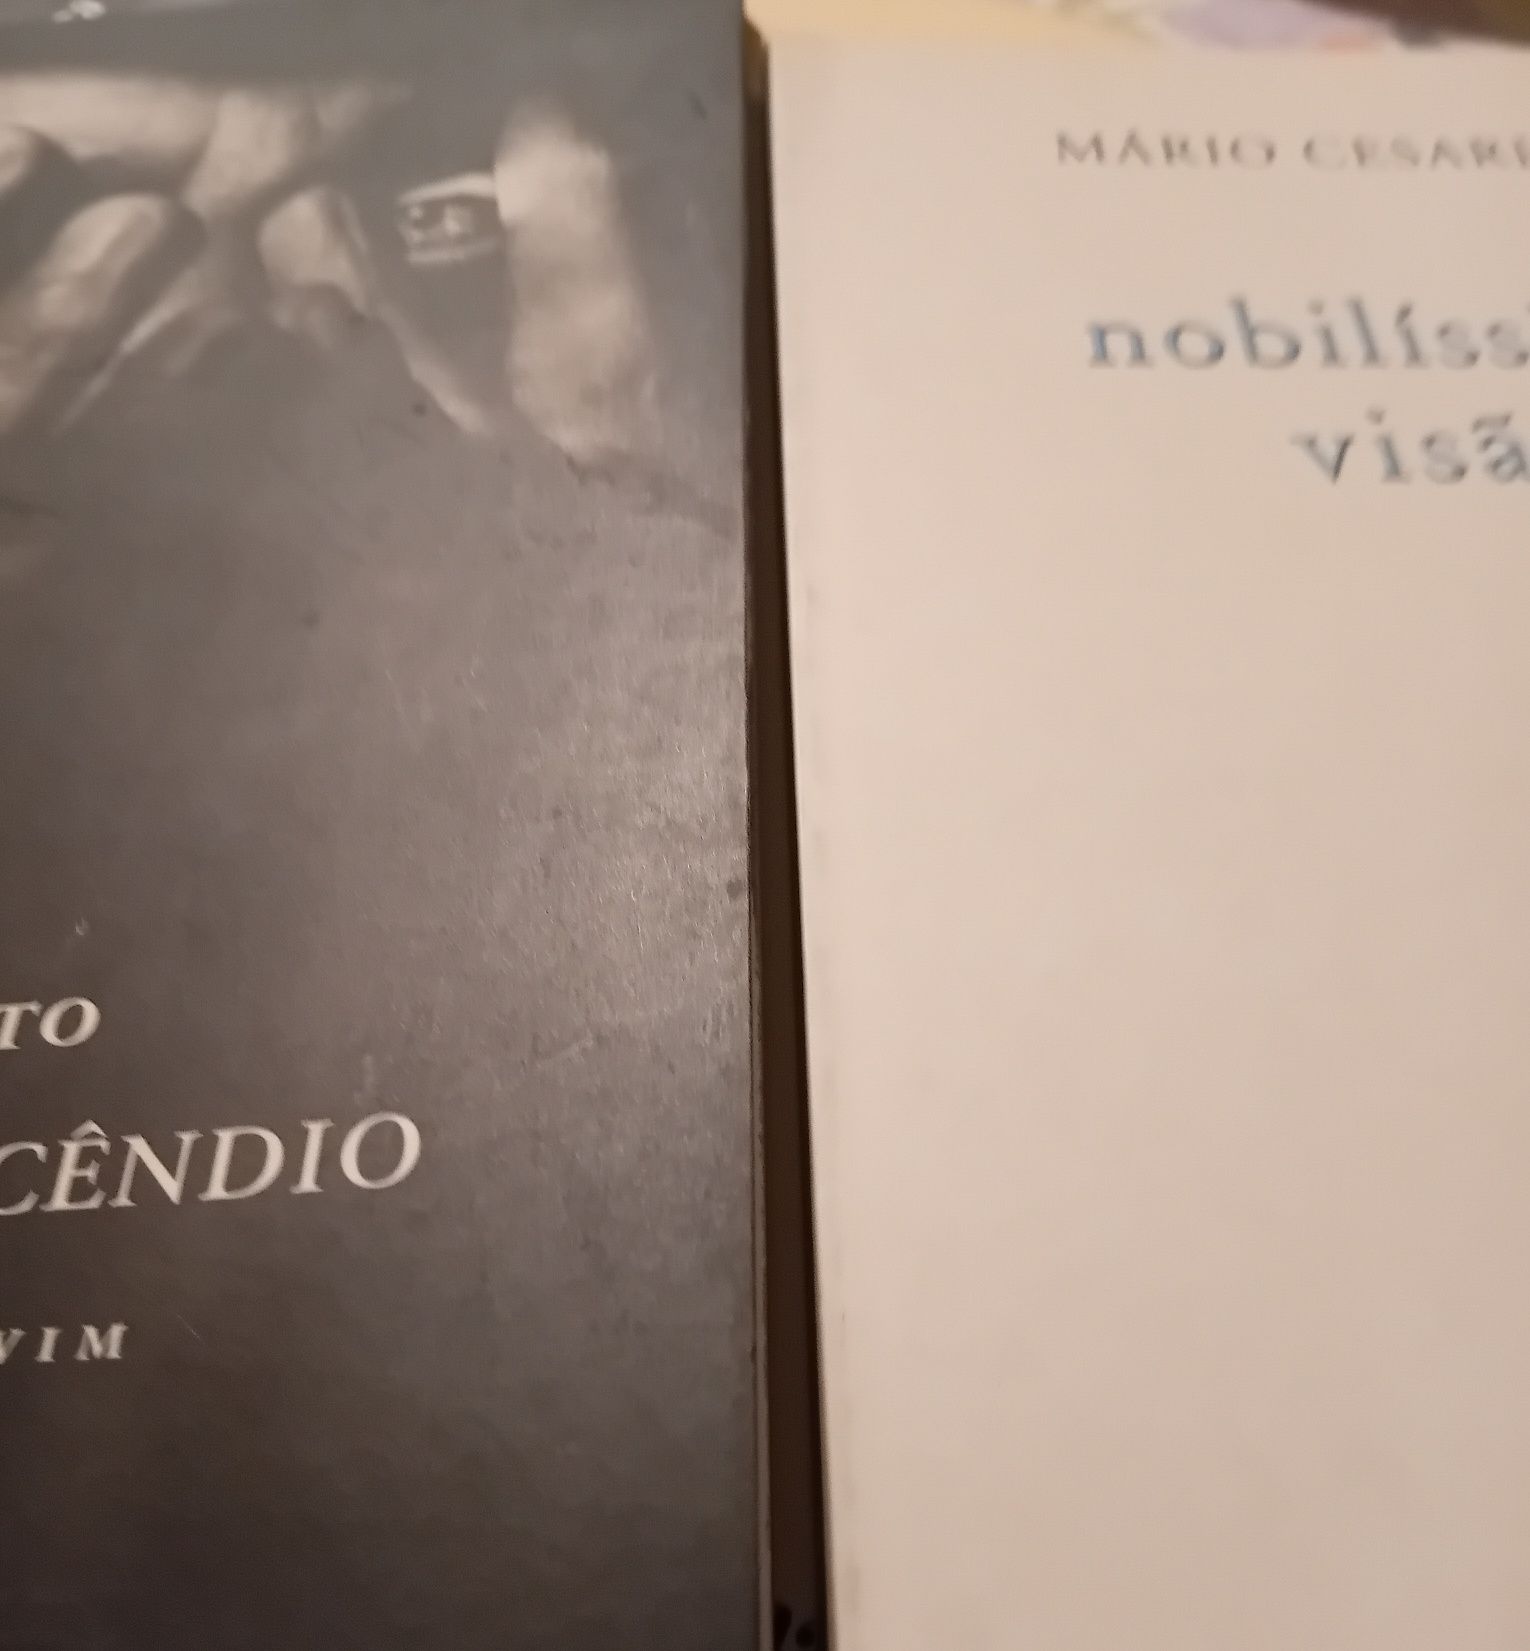 Dois Livros  Mario Cesariny e outro   / lote 10 euros